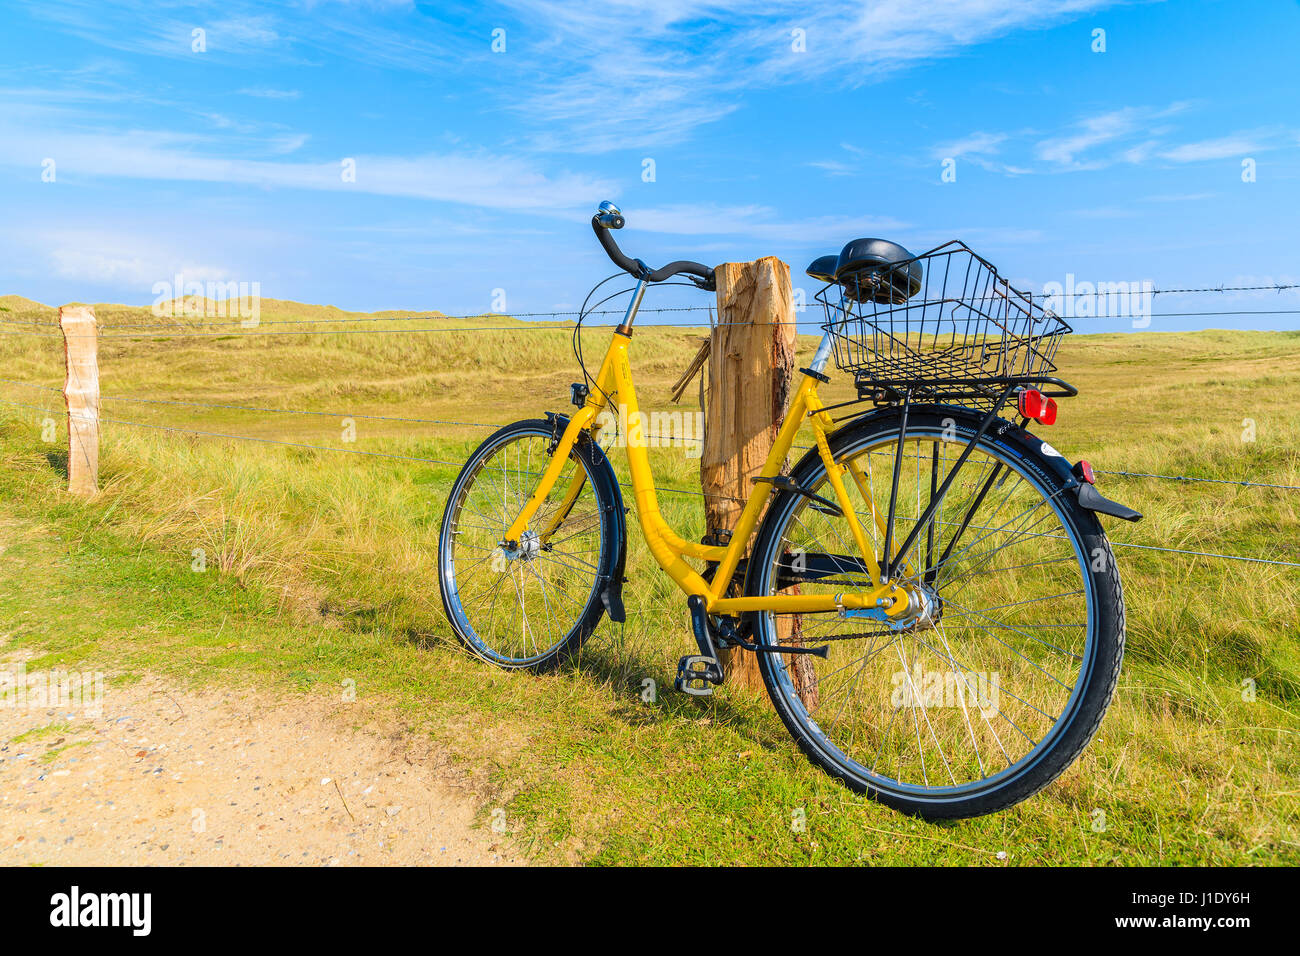 Insel SYLT, Deutschland - SEP 6, 2016: gelbe Fahrrad geparkt gegen einen Weidezaun in Landschaft Sylt Insel in der Nähe von Ellenbogen Strand, Deutschland. Stockfoto